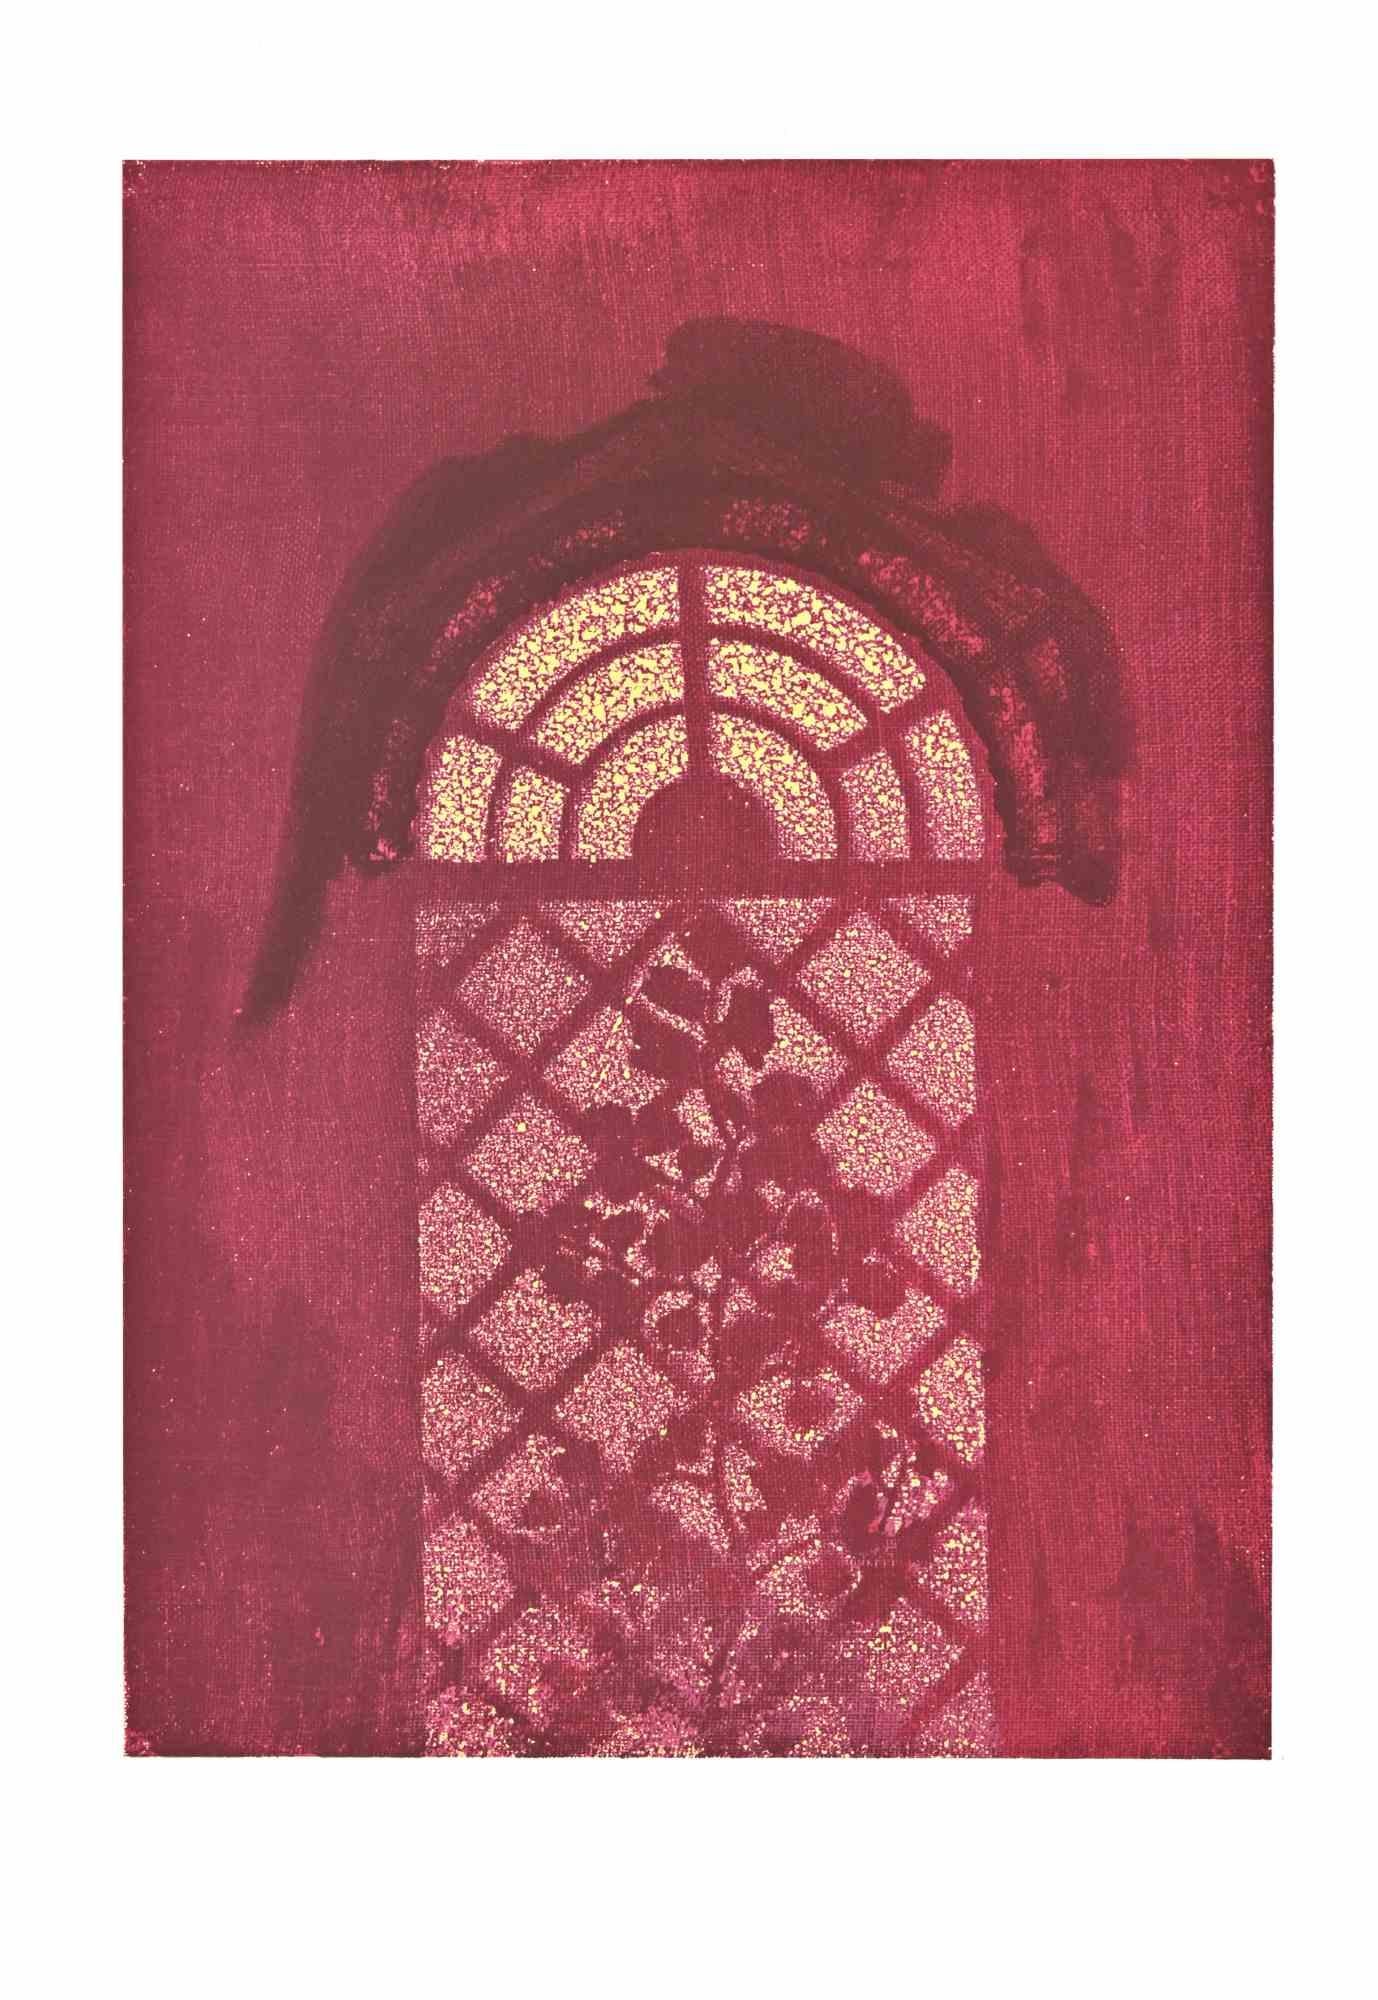 Through the Window est une lithographie sur papier Arches réalisée par Max Ernst en 1972.

Appartient à la suite "Judith". Edition limitée à 500 exemplaires.

Non signé et non numéroté, tel que publié.

Les conditions de Godd.

La Suite a été